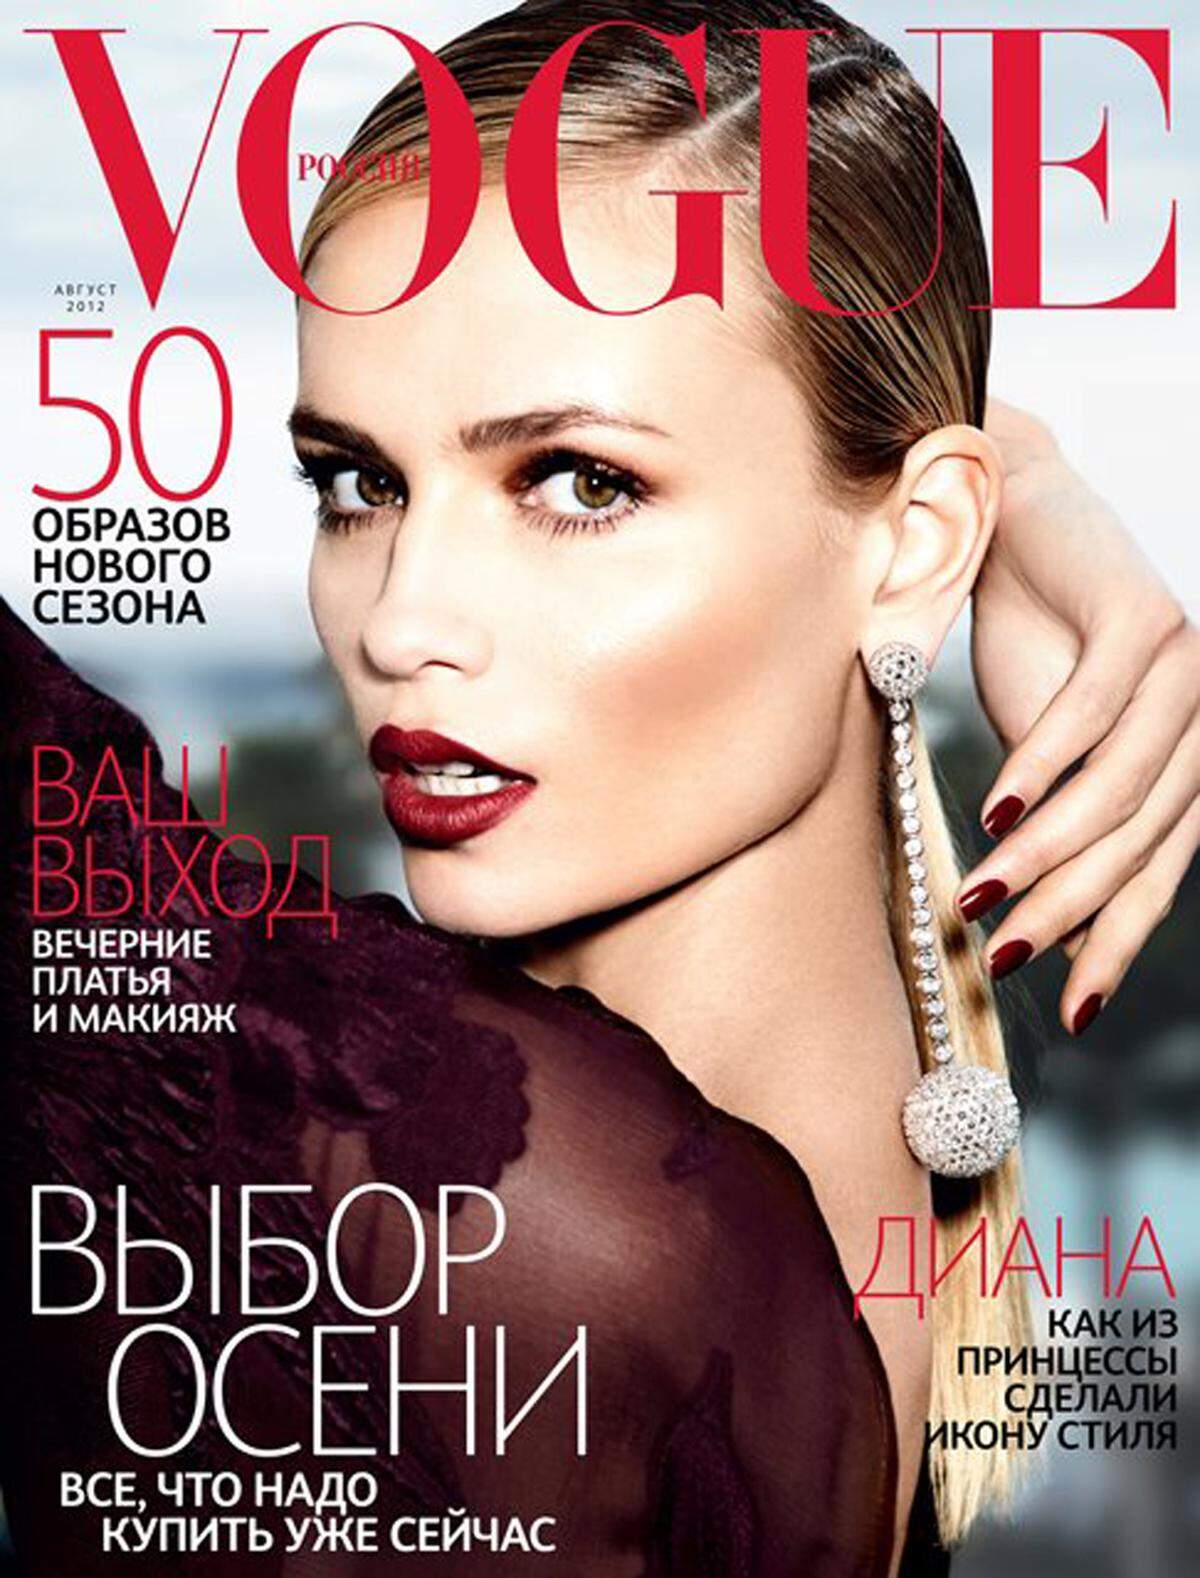 Selbst die Modebibel "Vogue" ist vor Fehlern nicht gefeit. Model Natasha Poly etwa verlor ihren Unterarm.